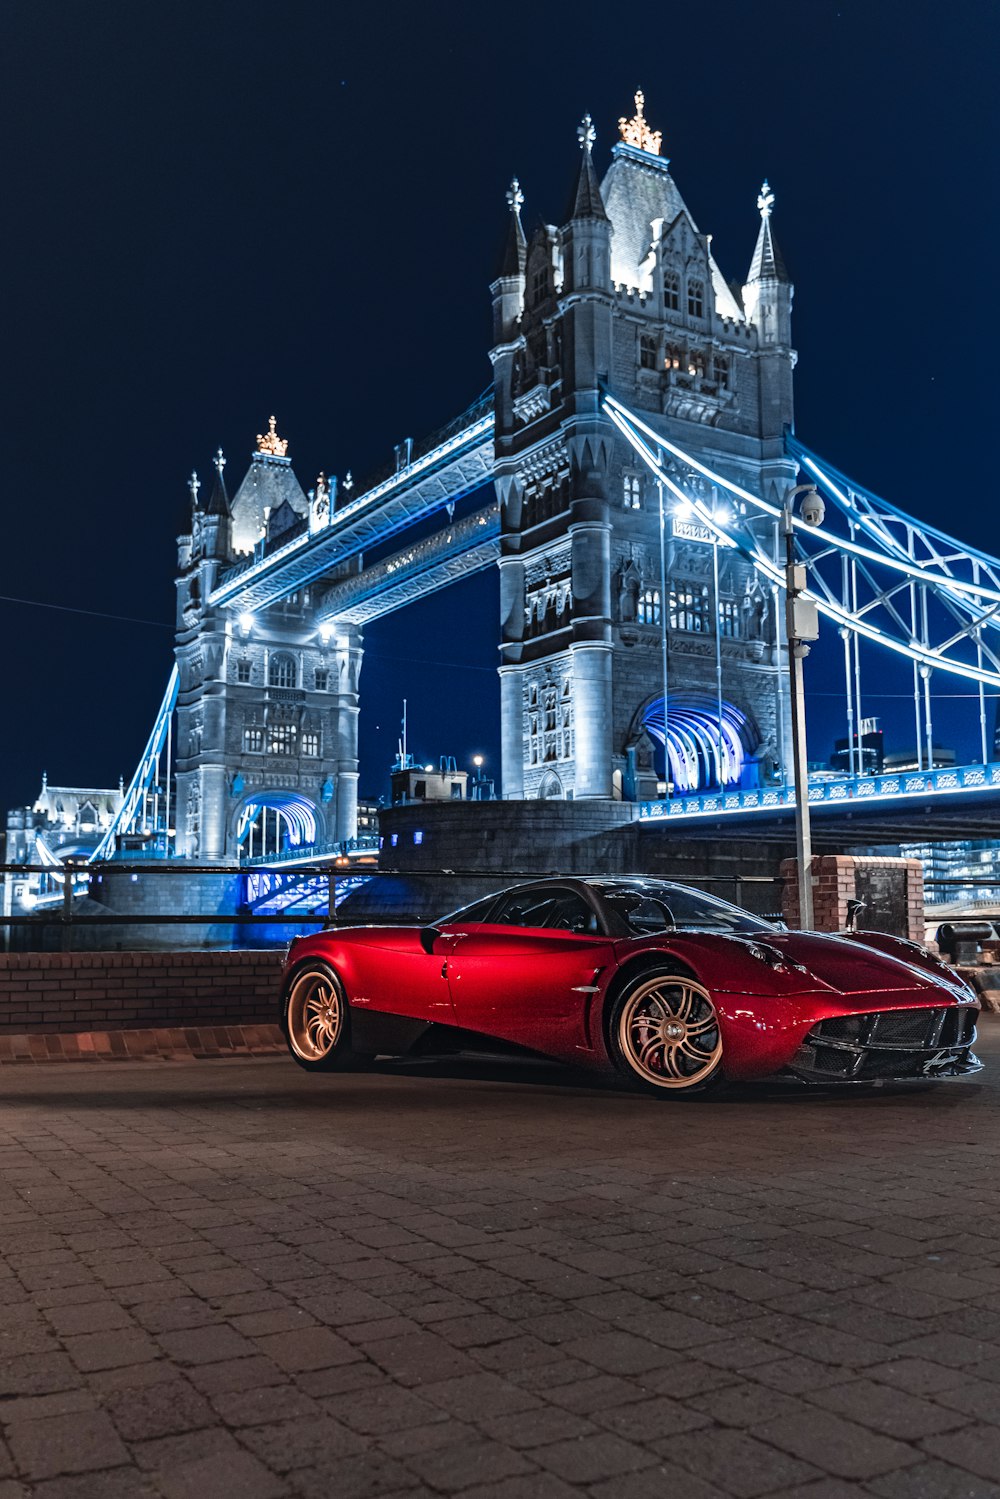 Un auto deportivo rojo estacionado frente a un gran puente por la noche